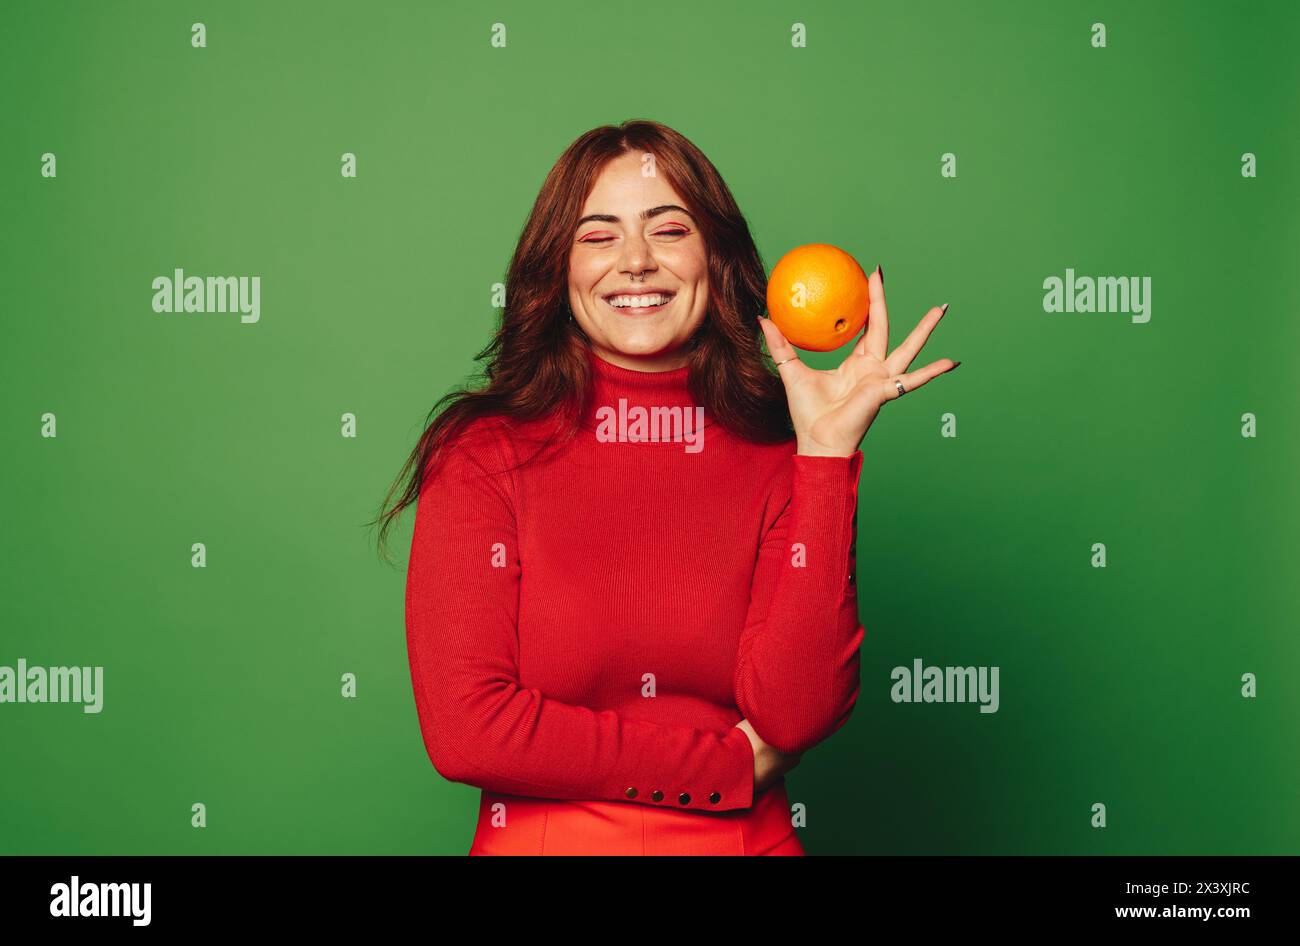 Una donna felice in un abbigliamento casual sorride mentre tiene in mano un frutto d'arancia in uno studio con sfondo verde. Il frutto rappresenta freschezza, nutrizione e wellbei Foto Stock